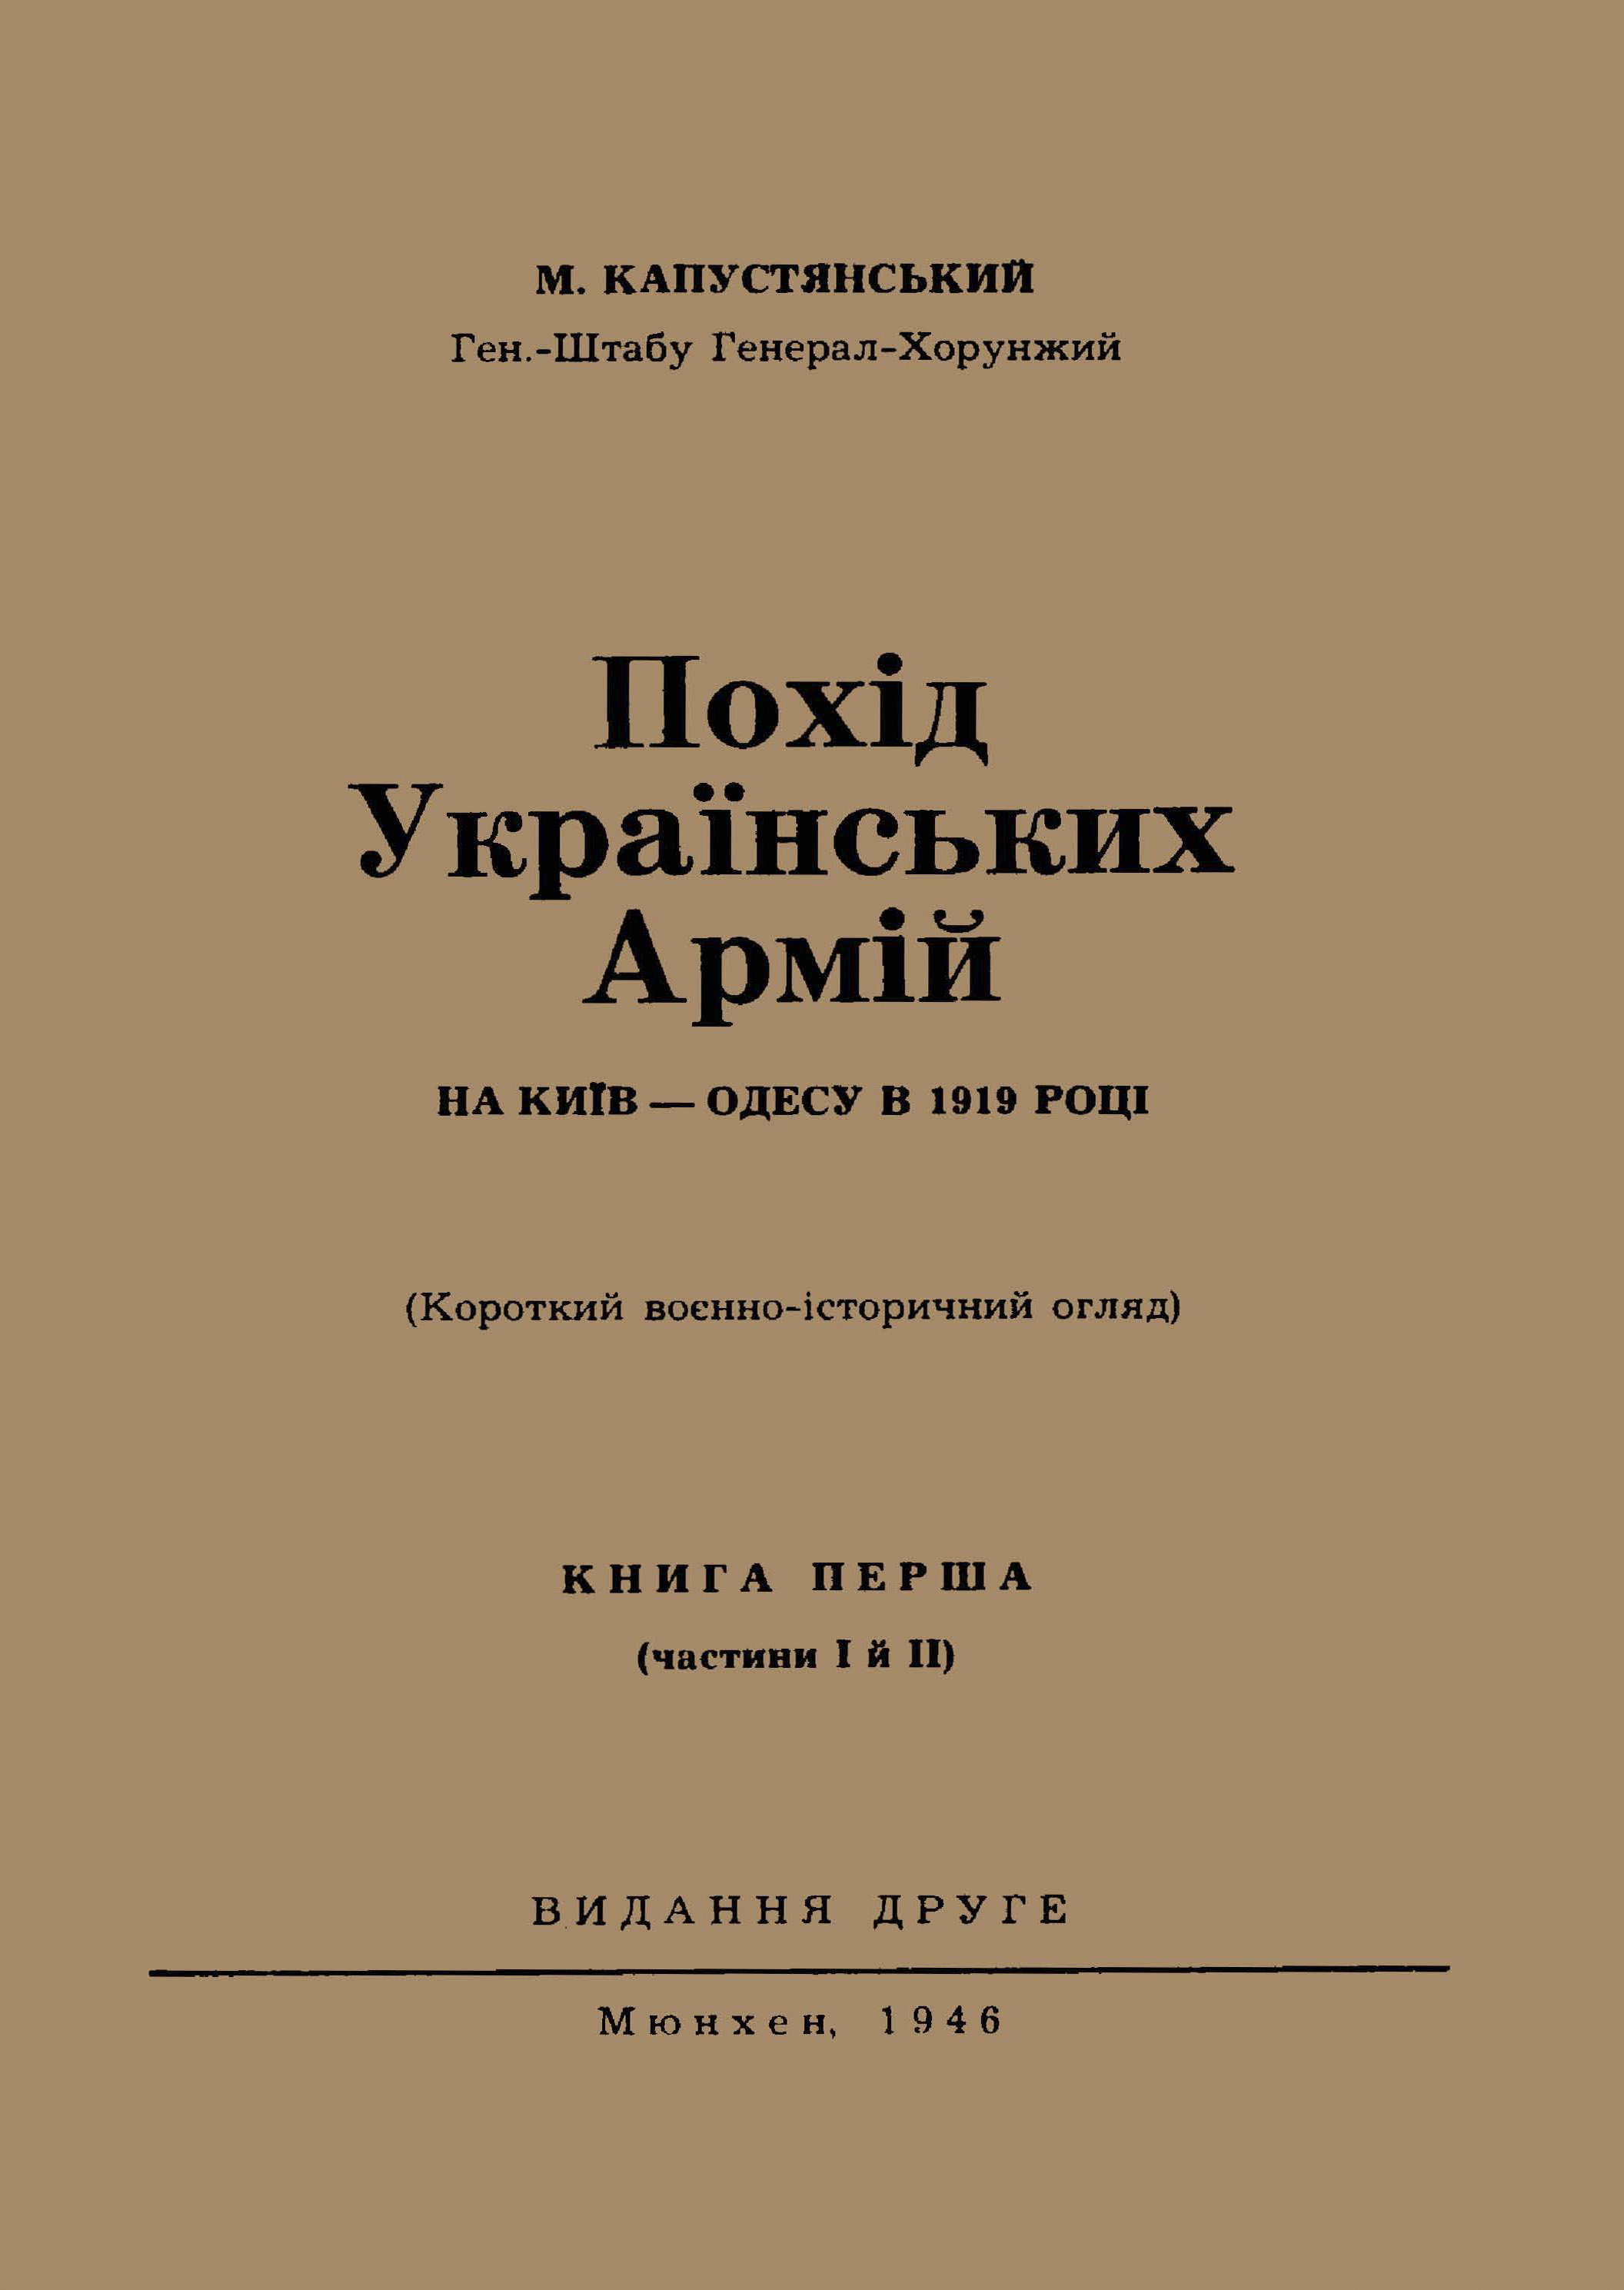 Обкладинка книжки М. Капустянського // https://www.libr.dp.ua/collections/index.php?pbp=75